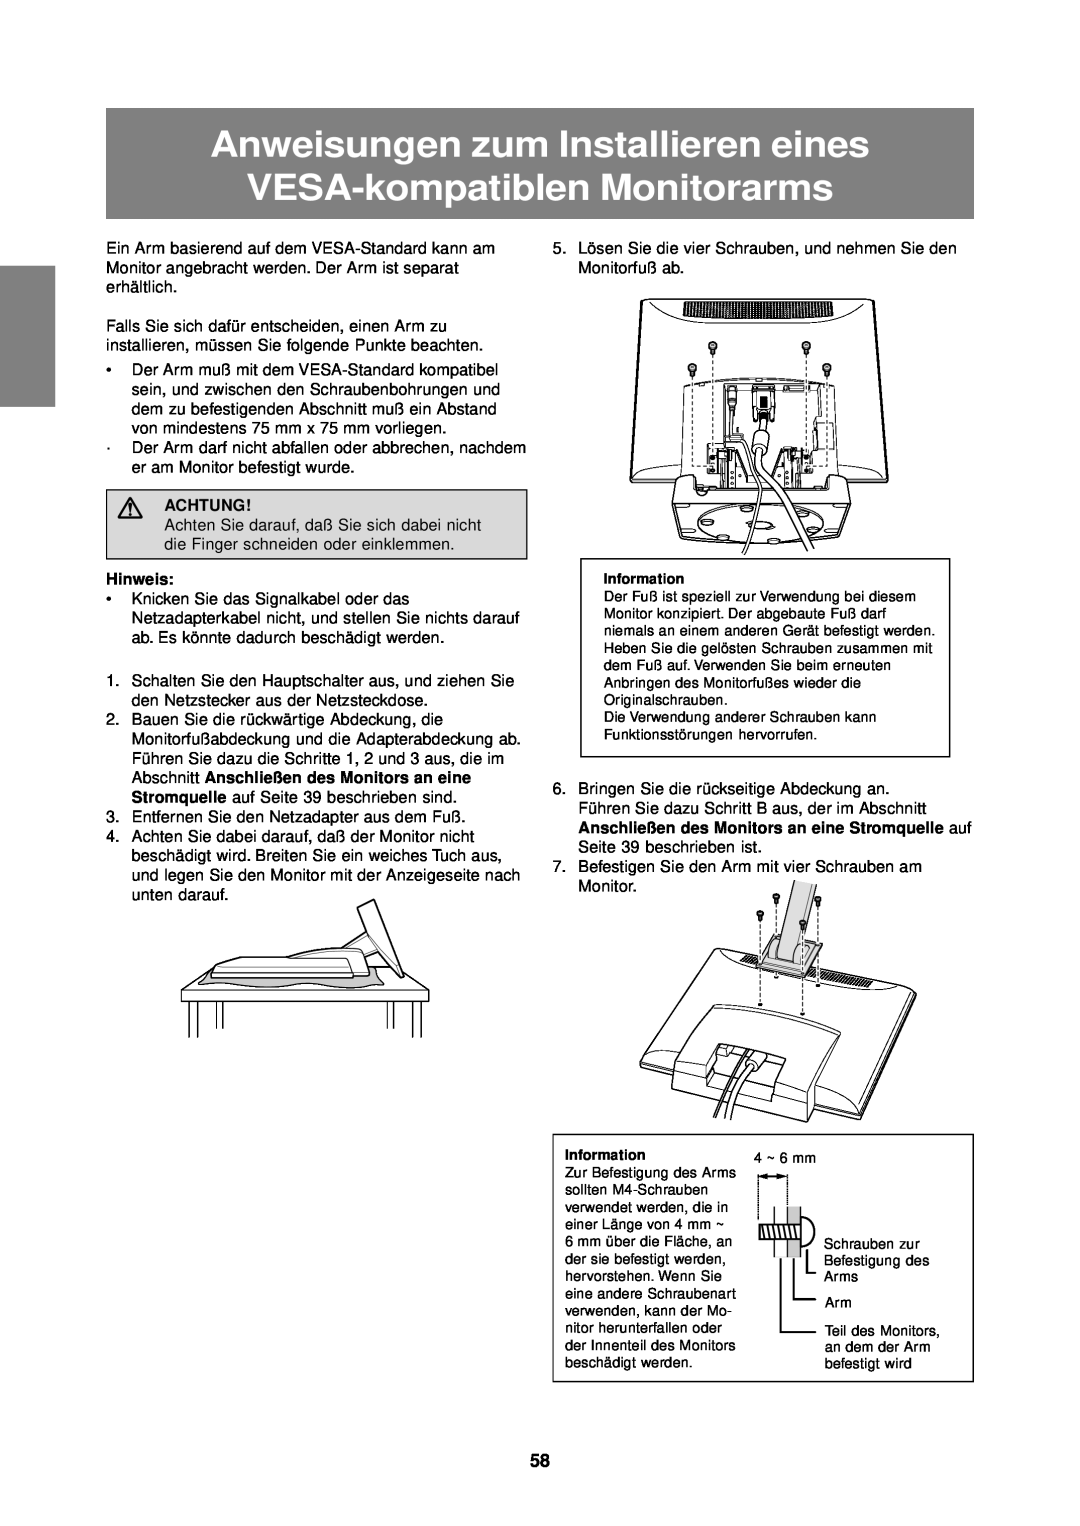 Sharp LL-T1610W operation manual Anweisungen zum Installieren eines VESA-kompatiblen Monitorarms, Achtung, Hinweis 